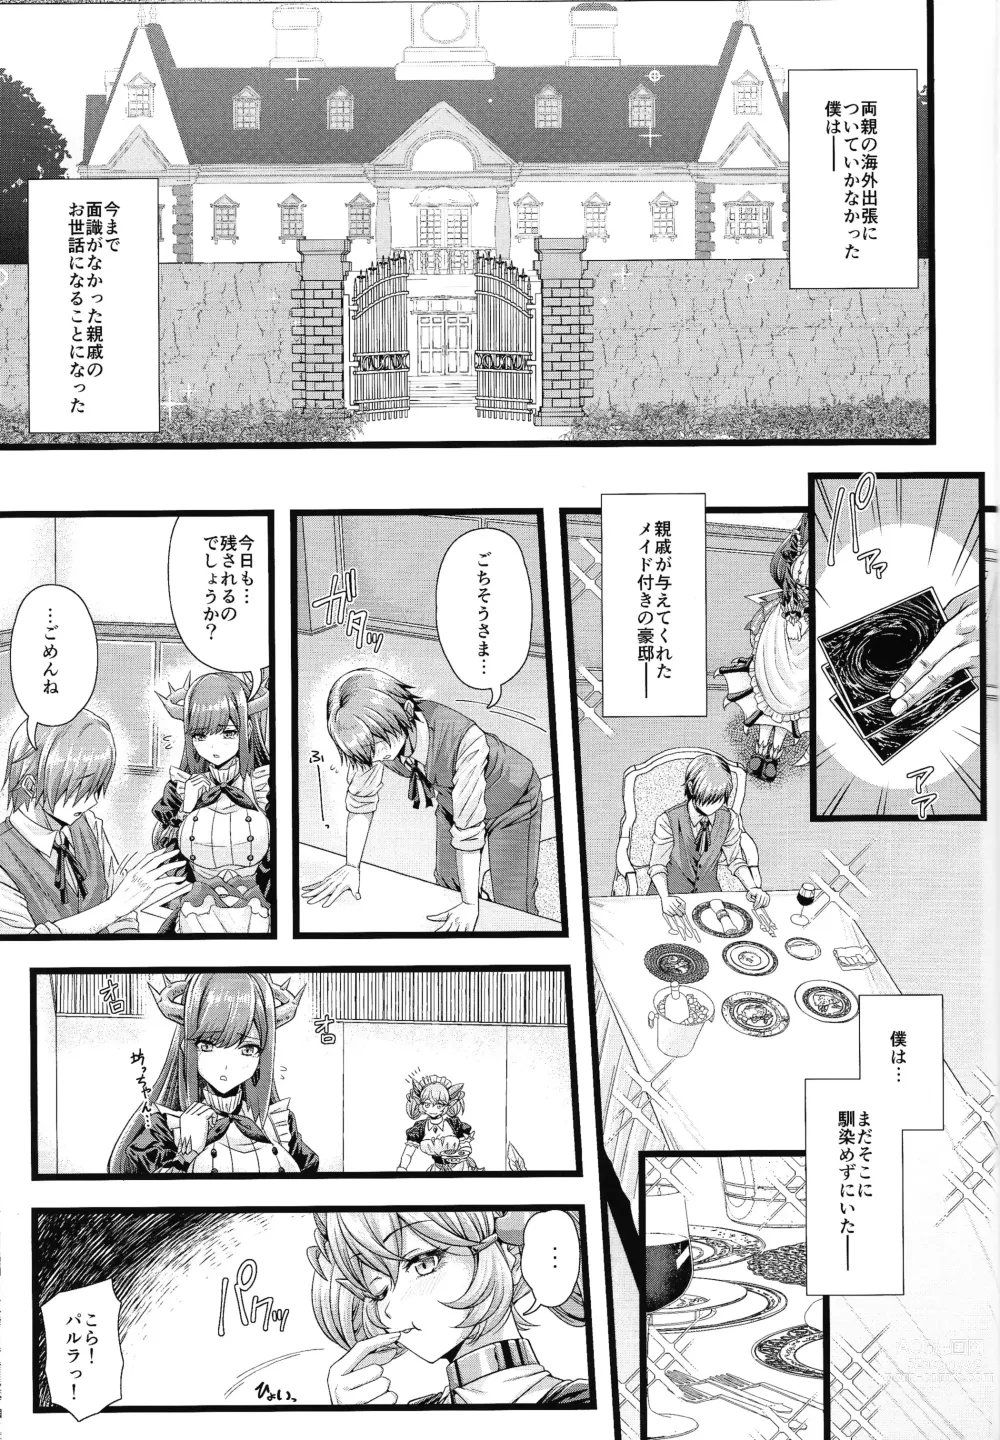 Page 2 of doujinshi Doragon Maid no Yotogibanashi